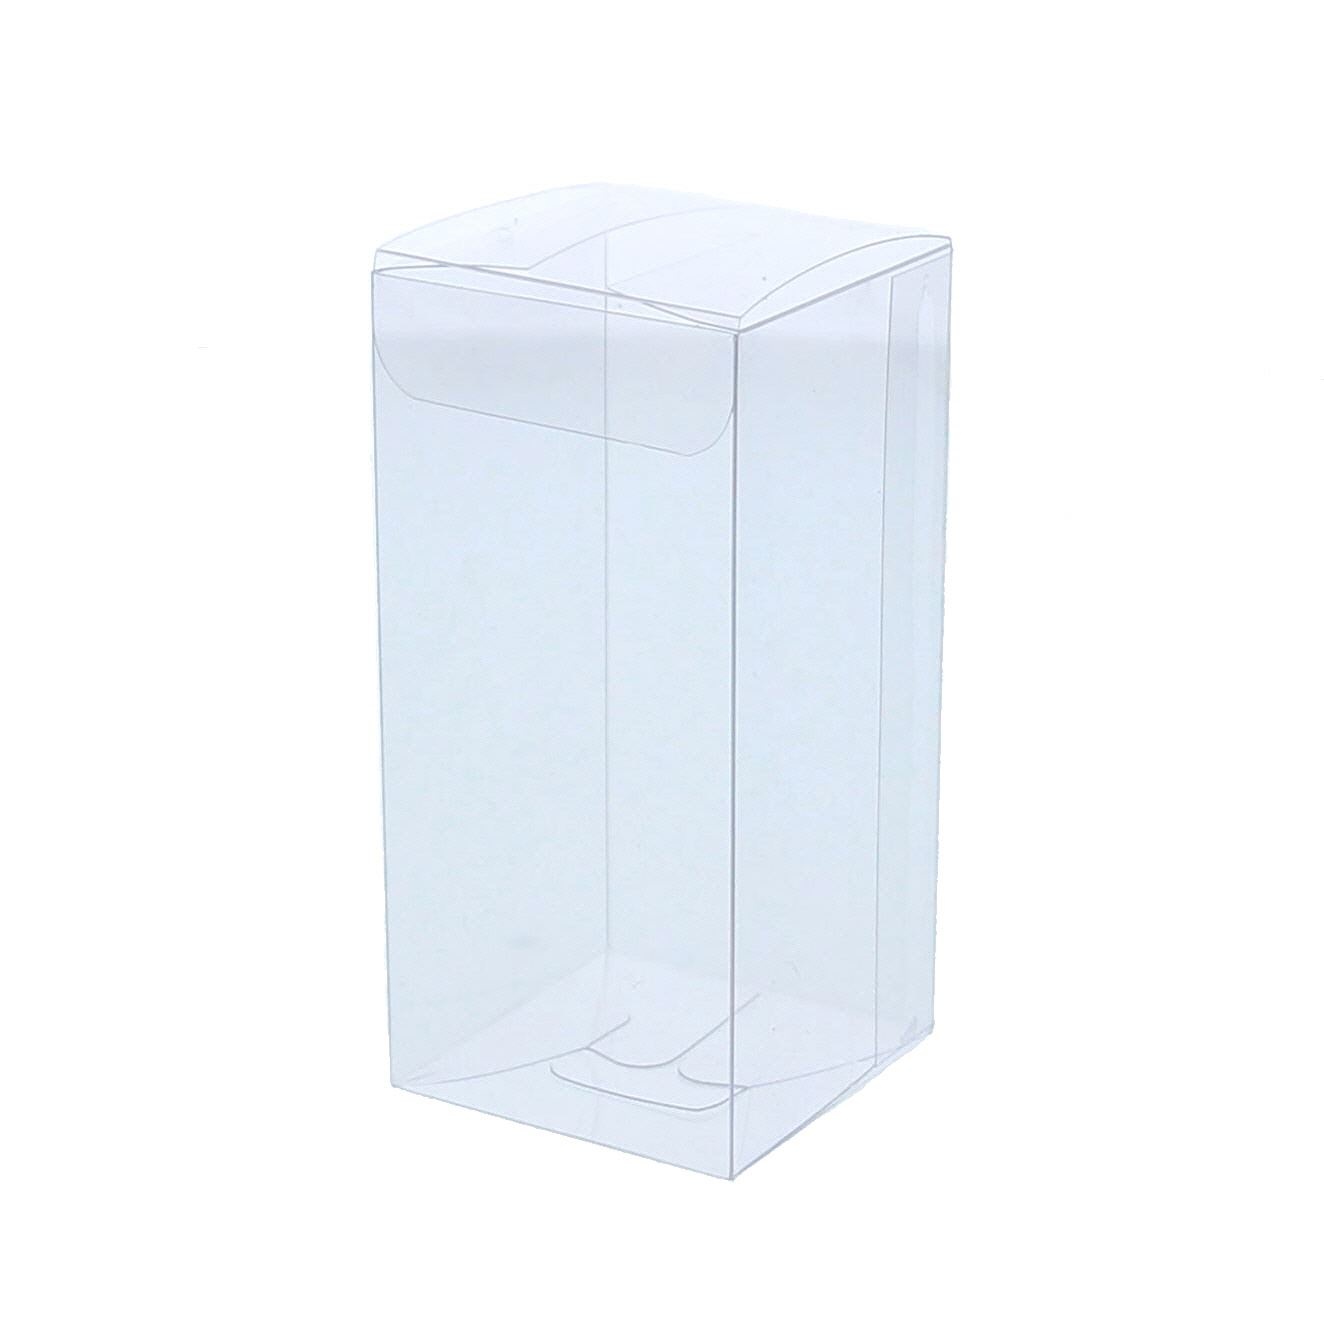 Caja transparente con tapa - 50*50*105mm - Pralibon